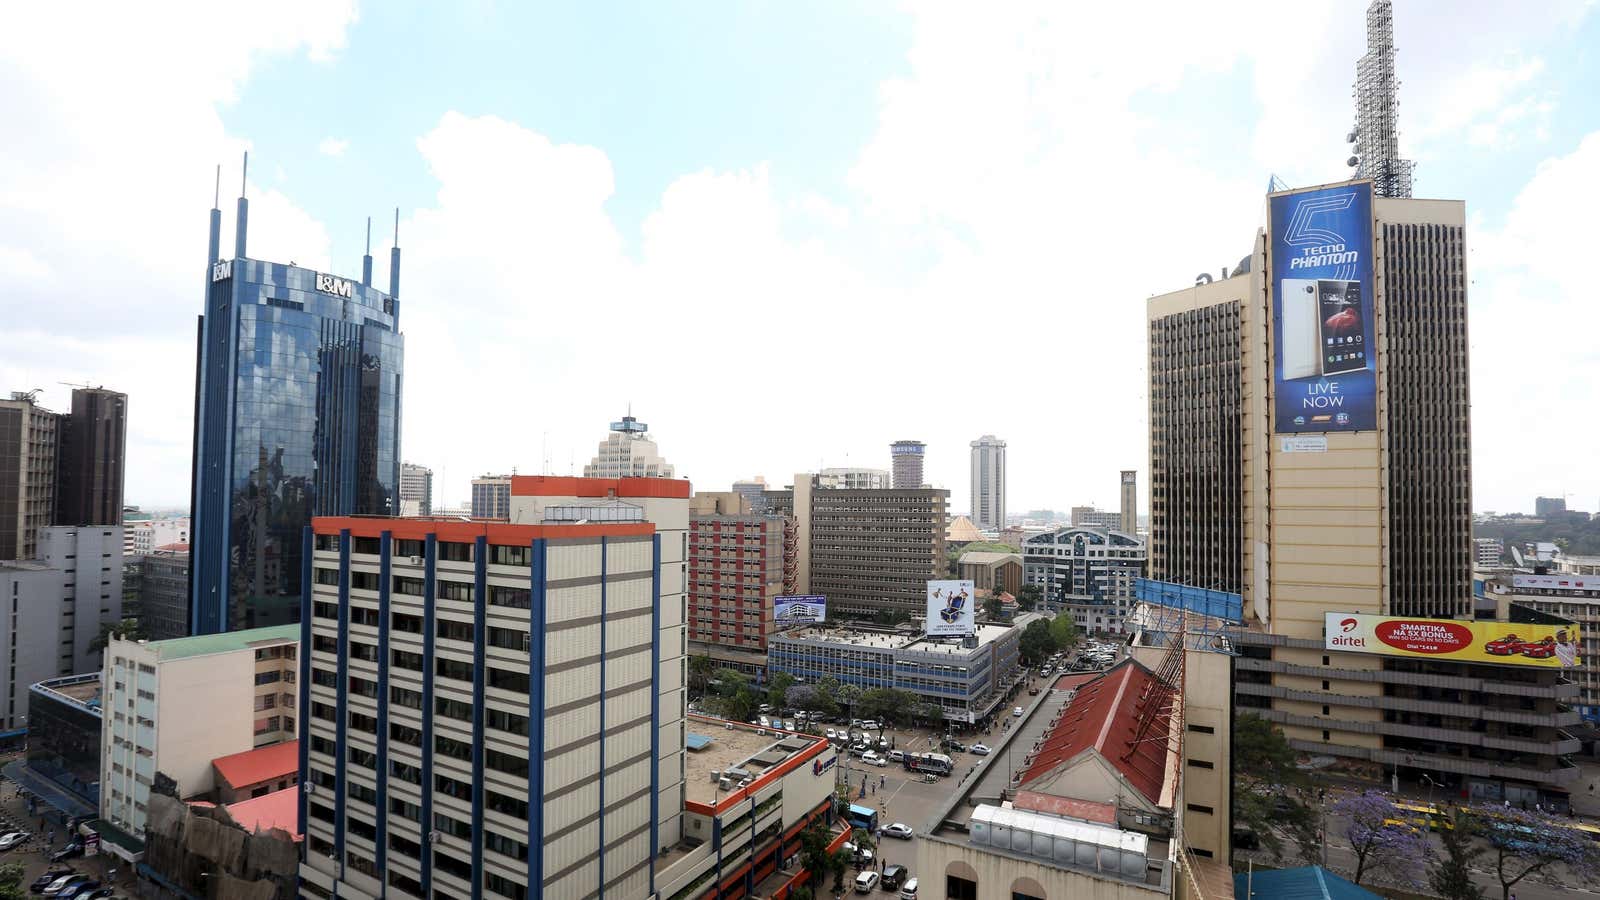 Nairobi downtown